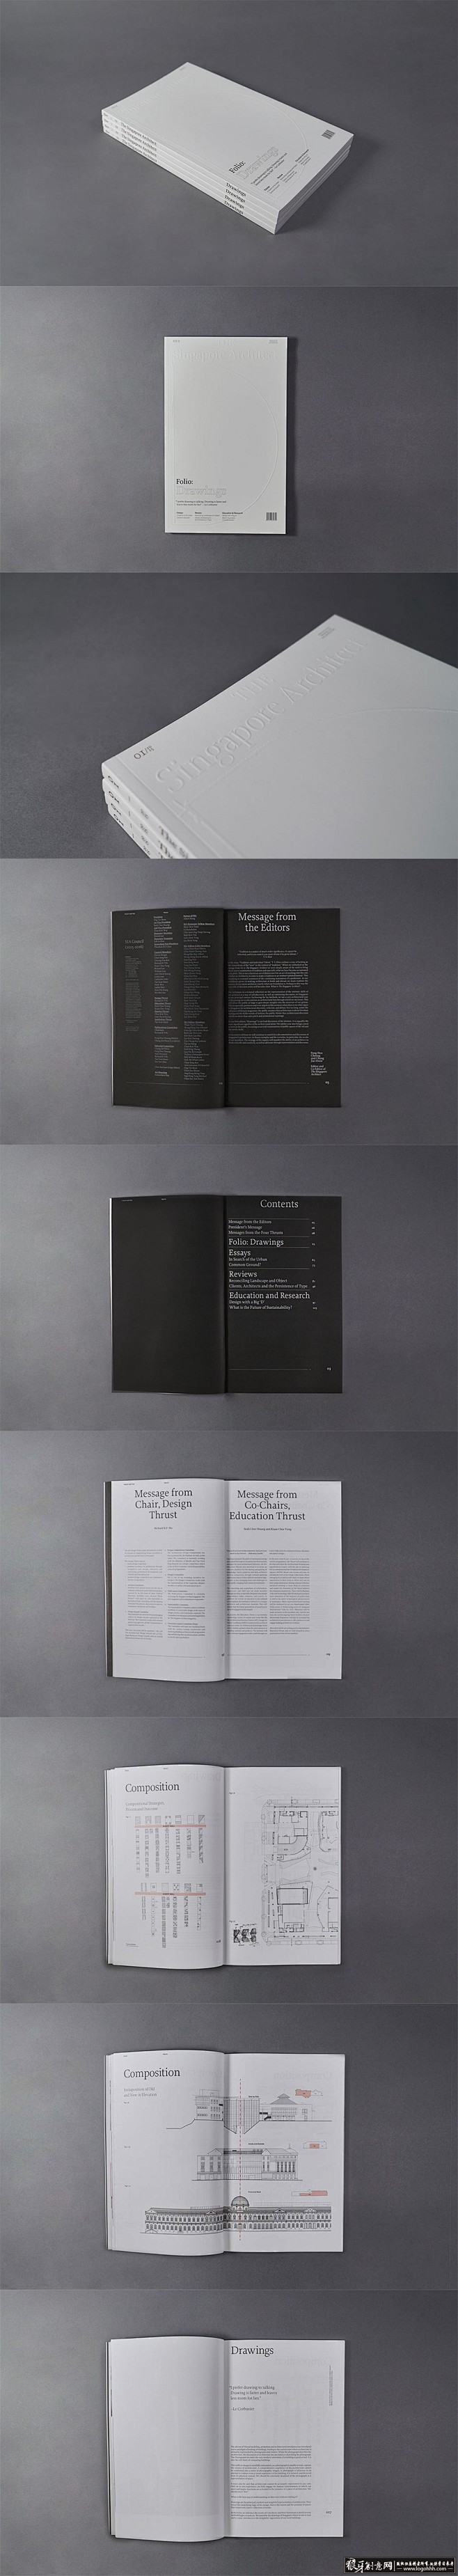 
创意画册 简约书籍装帧设计 编辑设计 ...